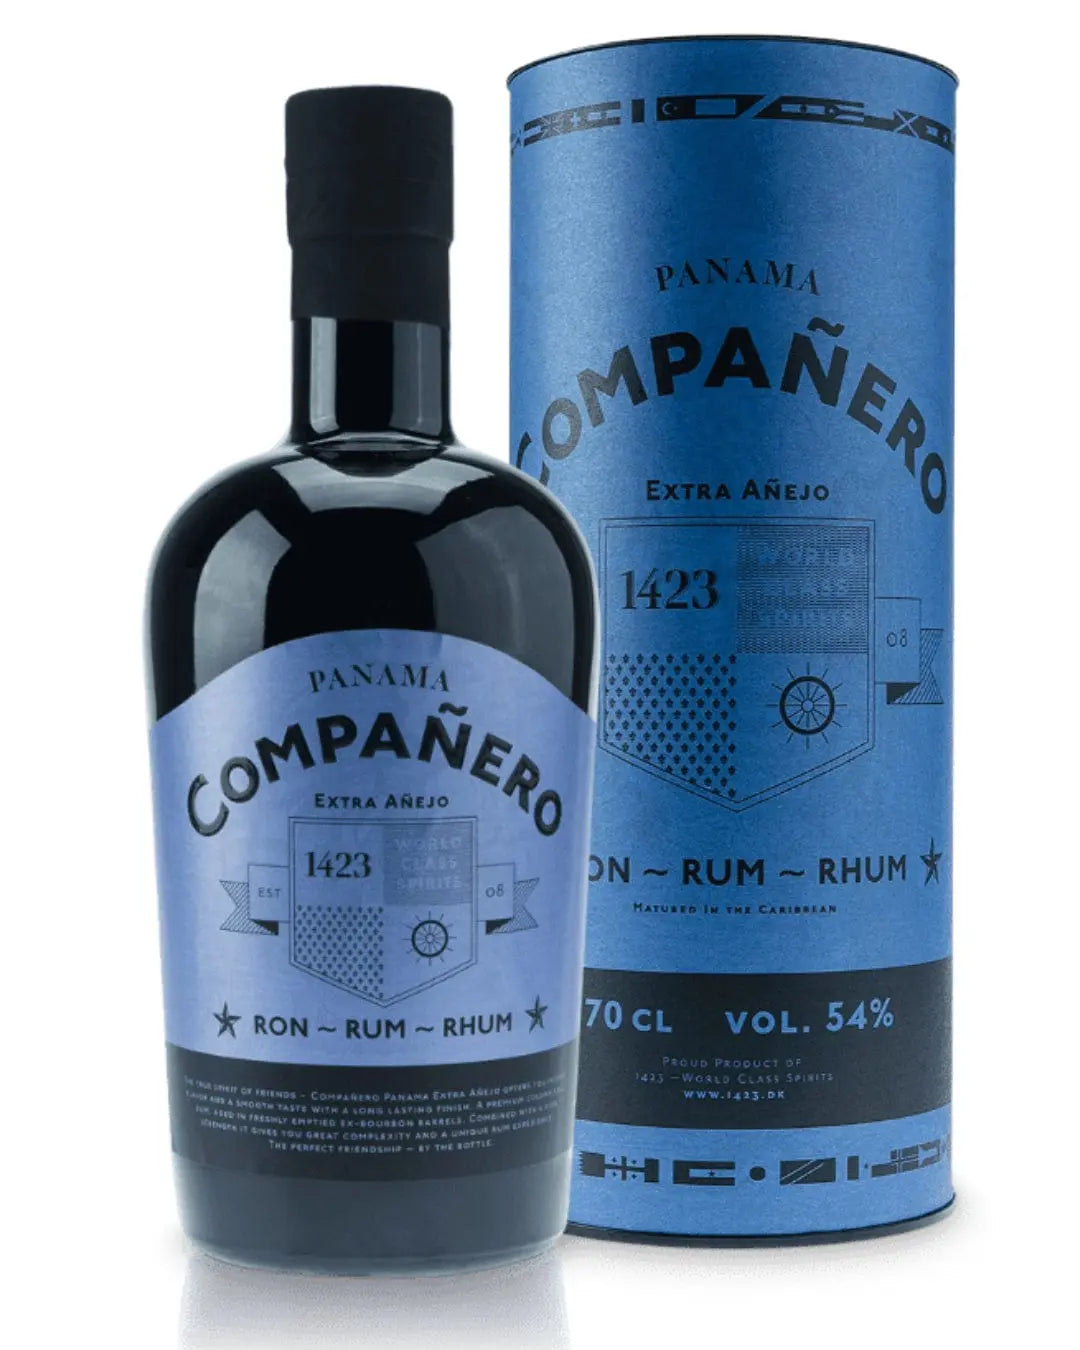 Companero Extra Anejo Panama Rum, 70 cl Rum 5712718000474